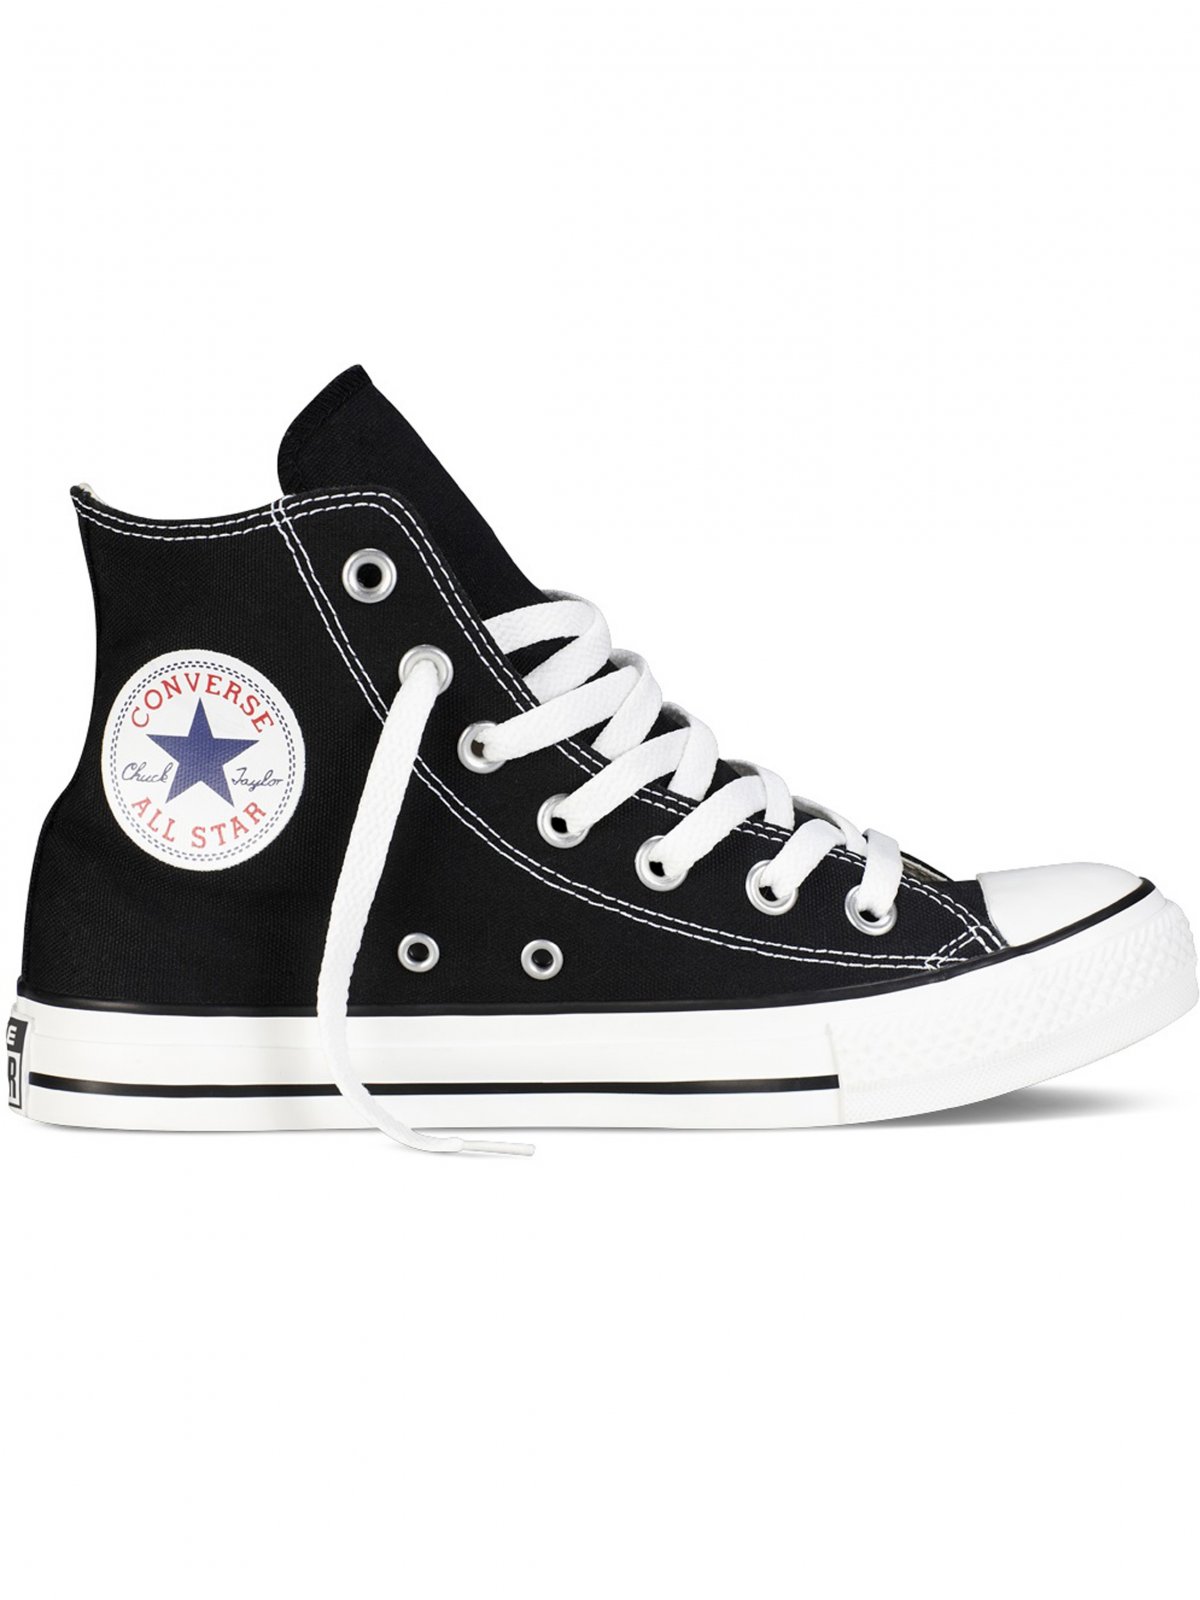 auricular Garantizar Partina City Converse All Star Unisex Chuck Taylor High Top Sneakers - Black/White